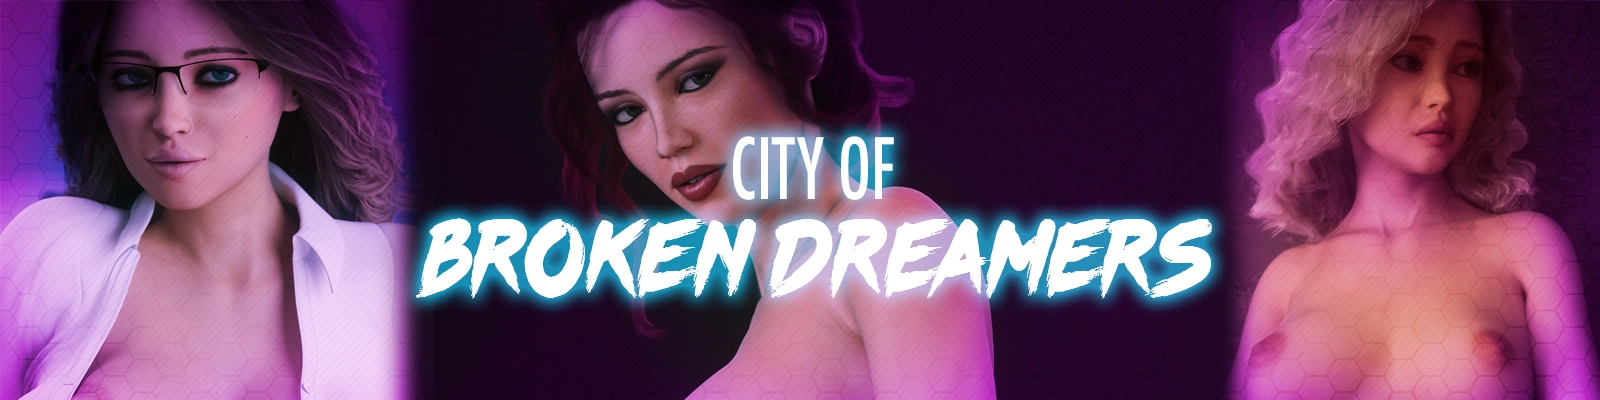 City of Broken Dreamers [v0.6.1] main image